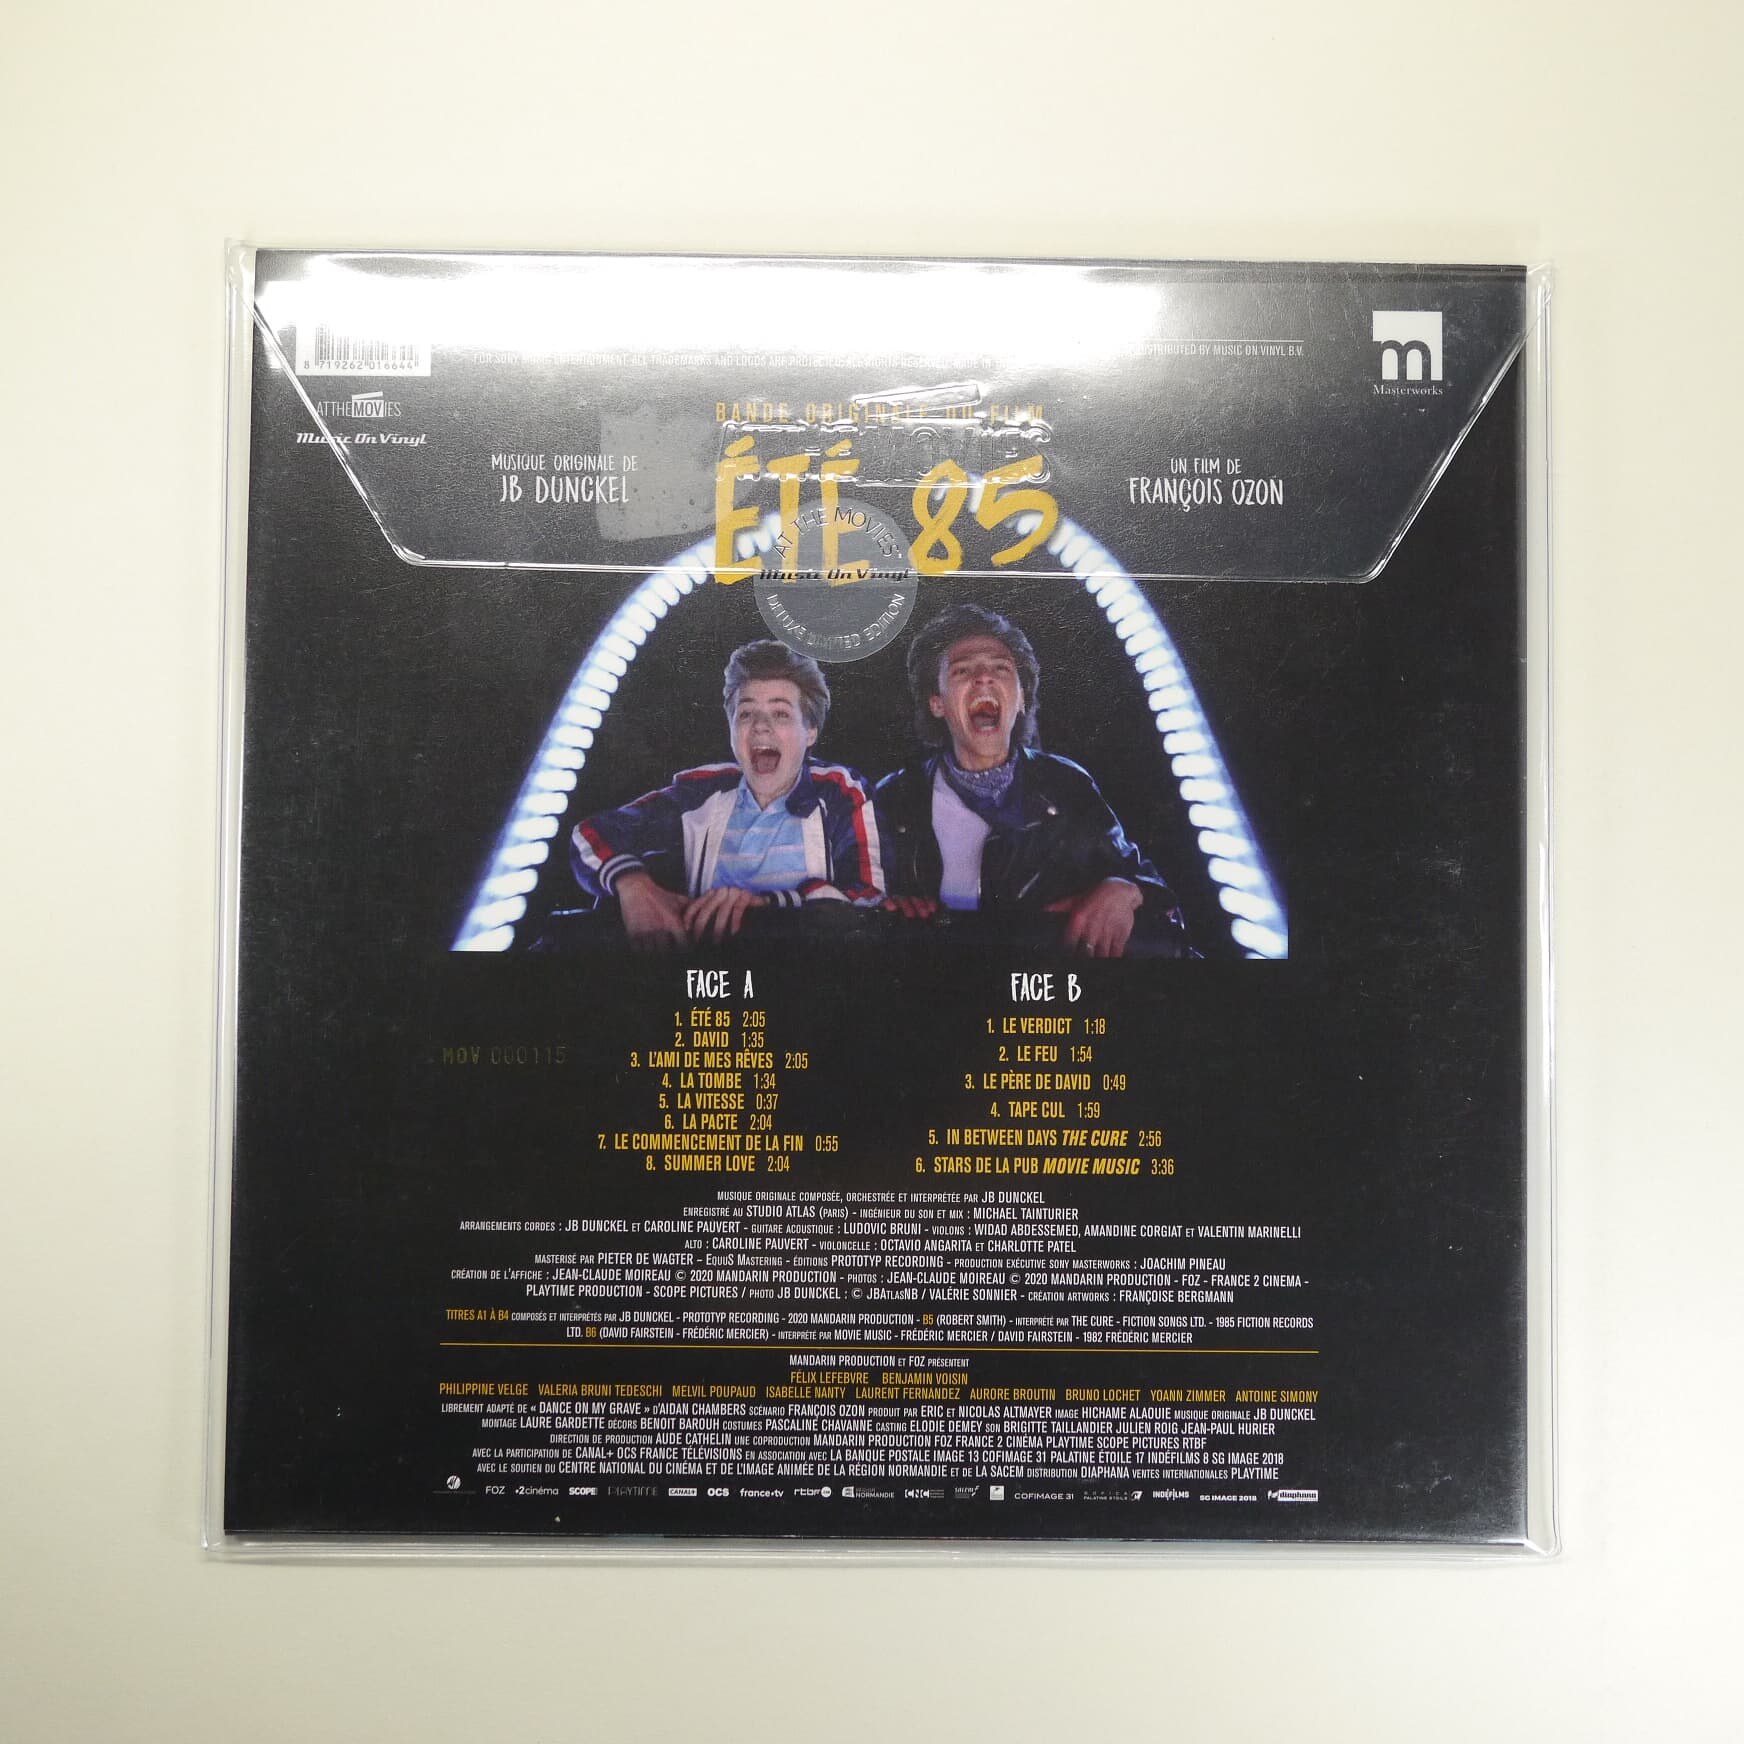 O.S.T. - Ete 85 (썸머 85) (Soundtrack)(Ltd)(180g Colored LP)